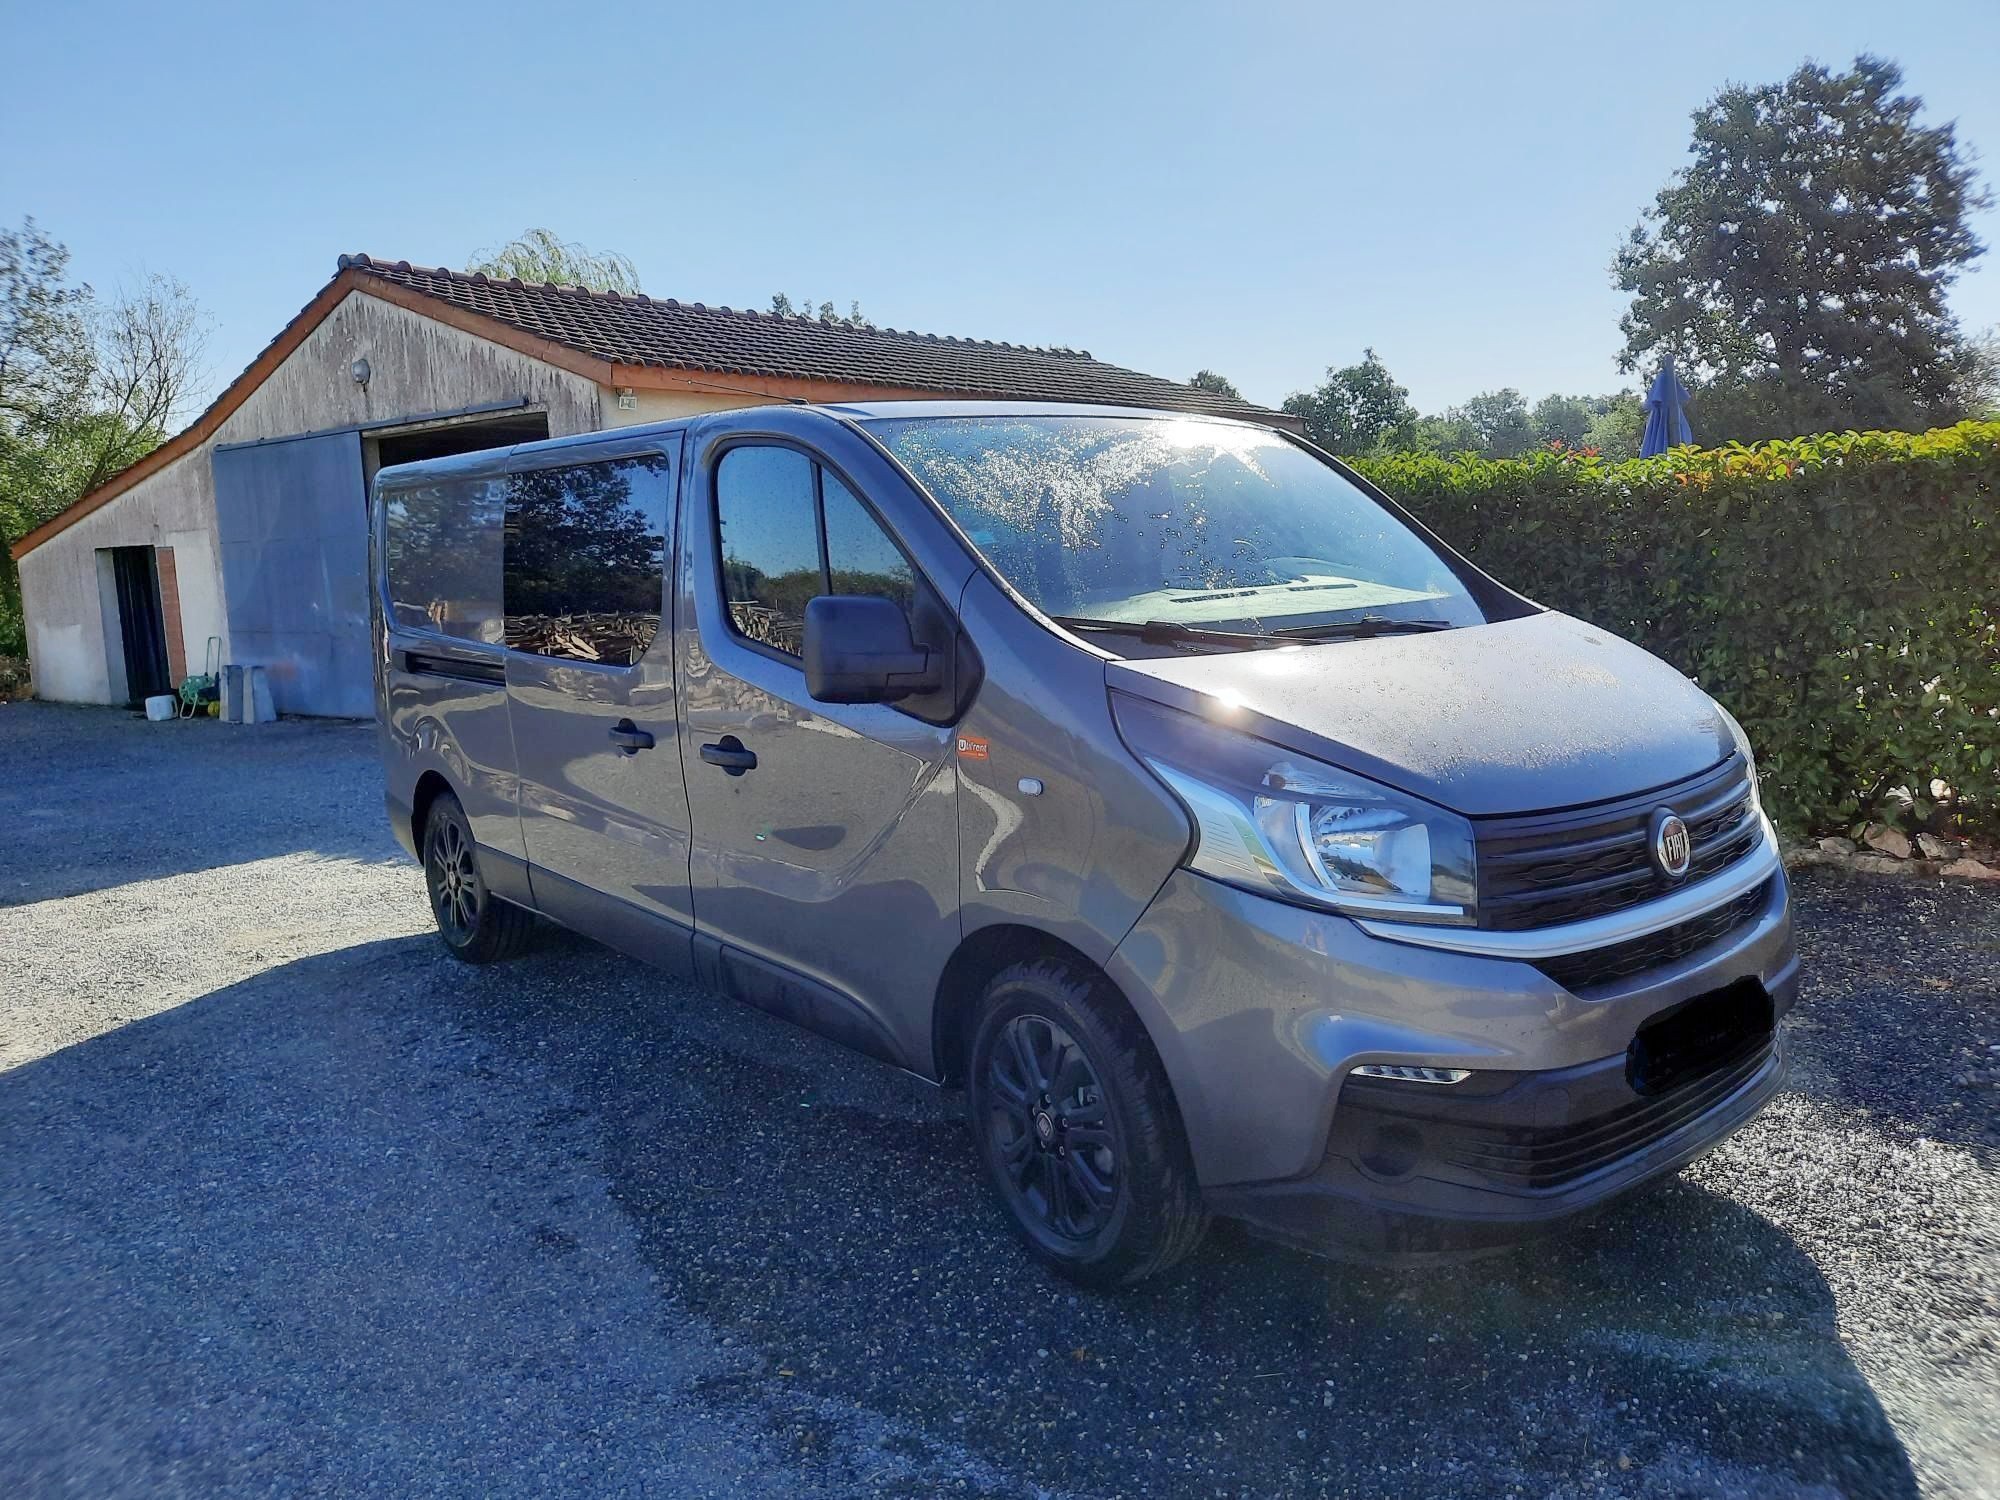 Location en LLD d'un fourgon double cabine Fiat Talento pour un fabricant de meubles à Sarlat-la-Canéda, en Dordogne (24) 4